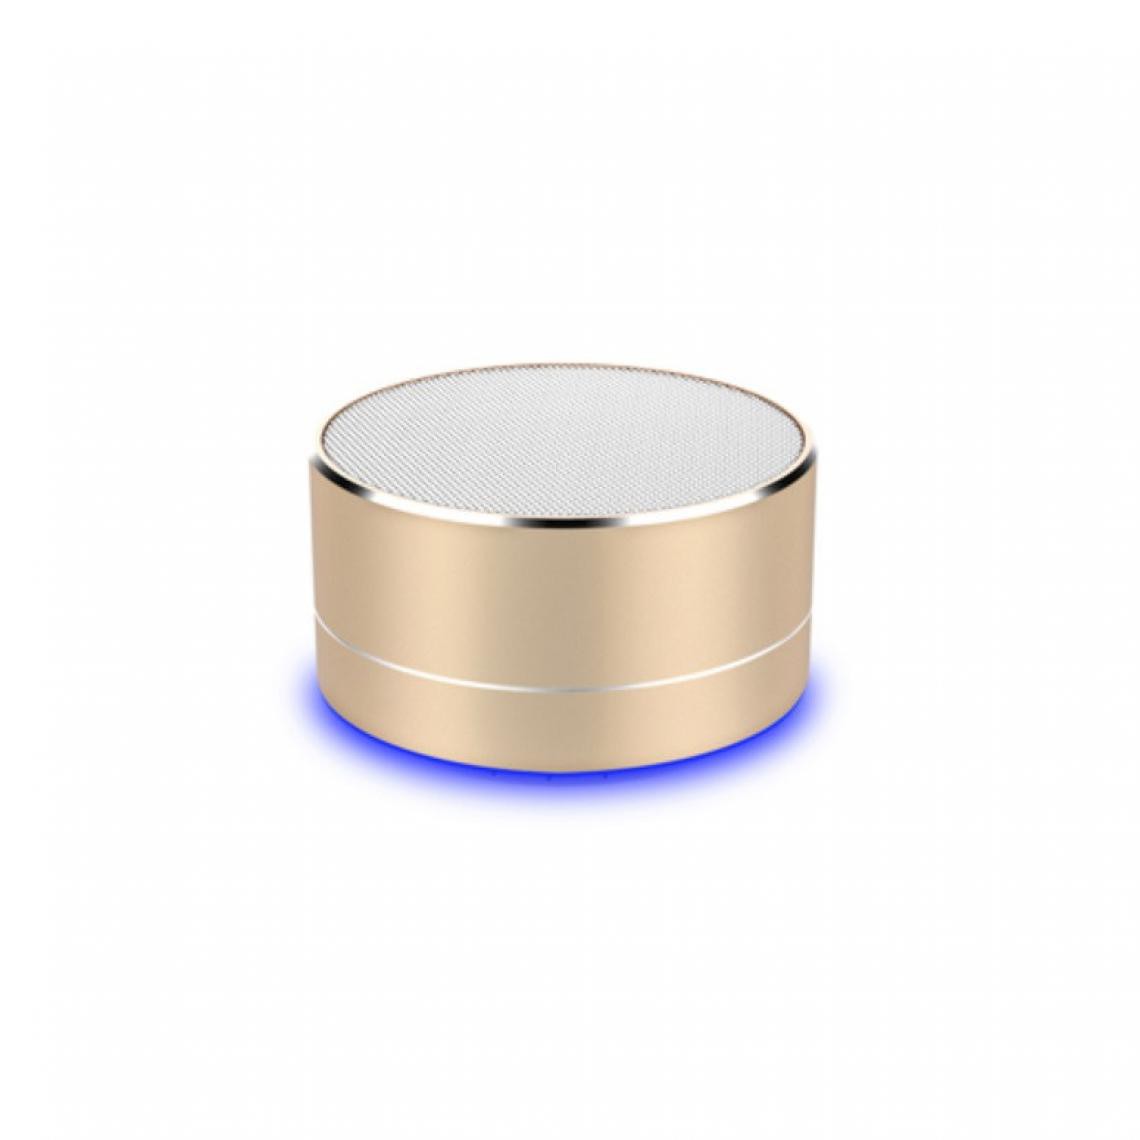 Shot - Enceinte Metal Bluetooth pour ONEPLUS 7 Smartphone Port USB Carte TF Auxiliaire Haut-Parleur Micro Mini (OR) - Autres accessoires smartphone